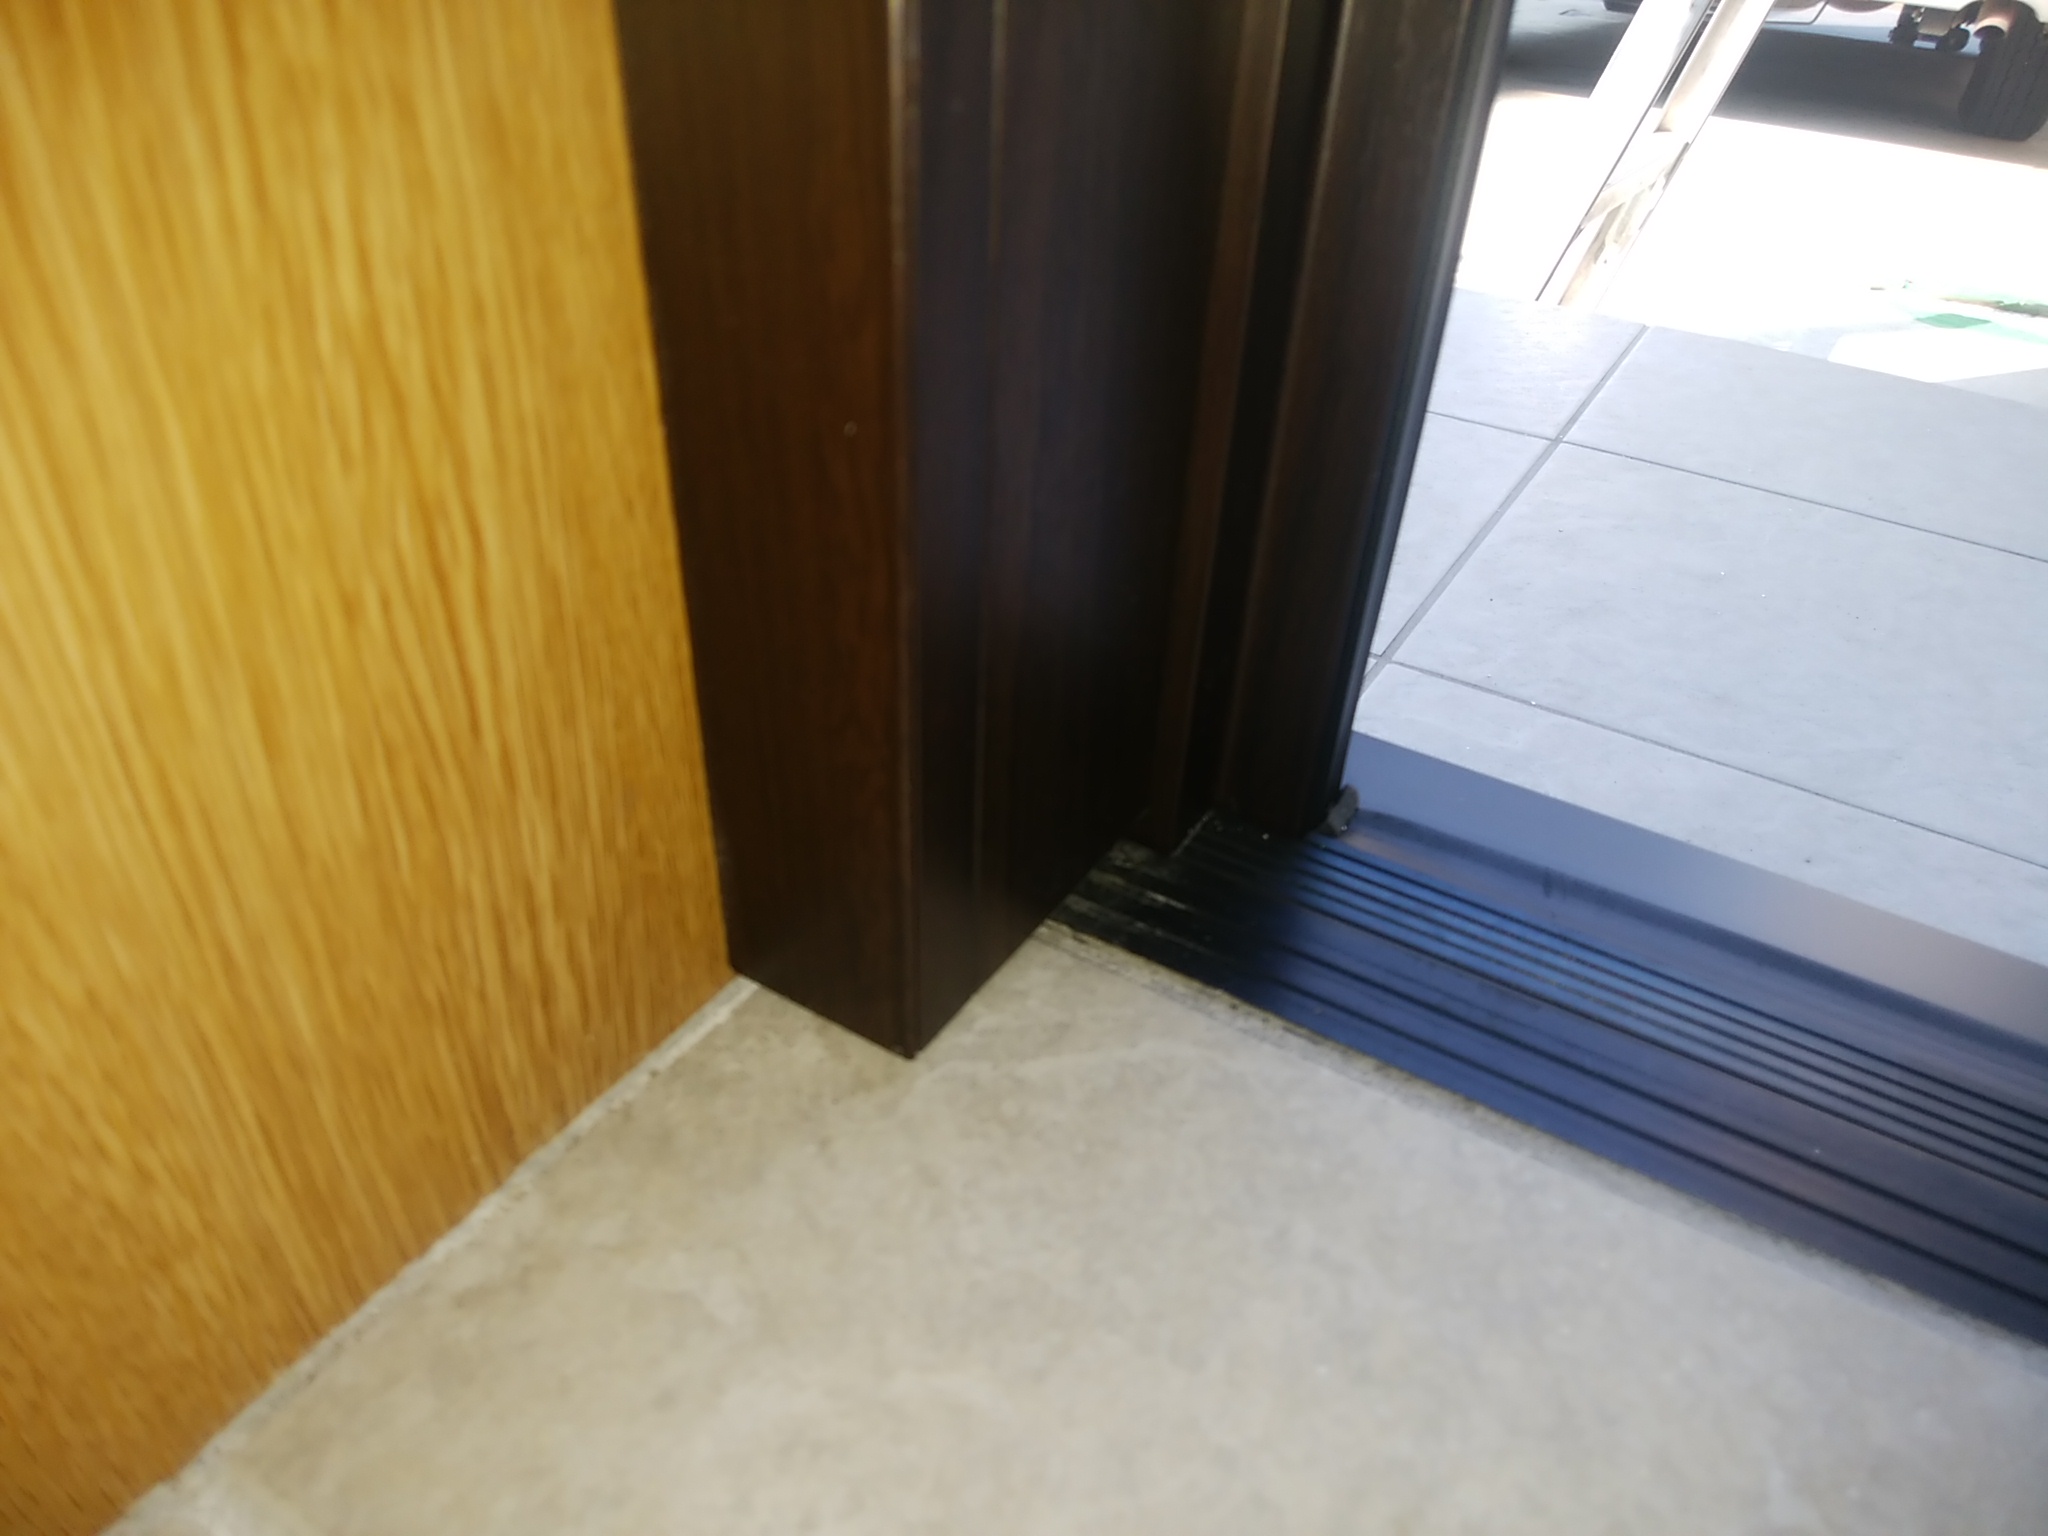 ドアの開き方は左右変えられます 千葉県市川市の工事事例 Lixilリシェントm28型 玄関ドアのリフォームなら玄関ドアマイスターへお任せください